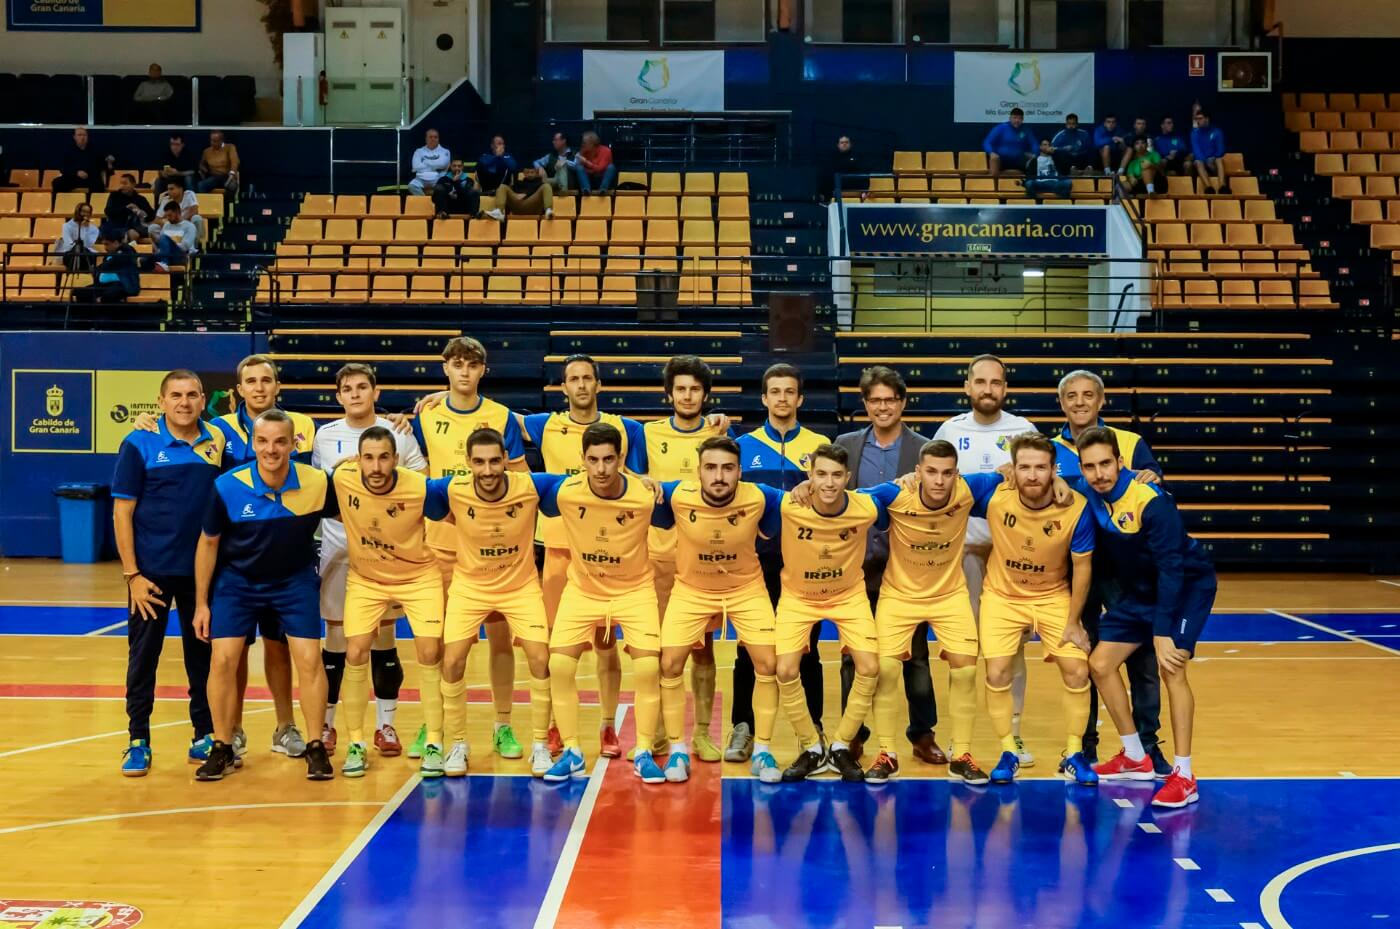 CD Salesianos Tenerife vs Gran Canaria FS: Reencuentro en la categoría de bronce